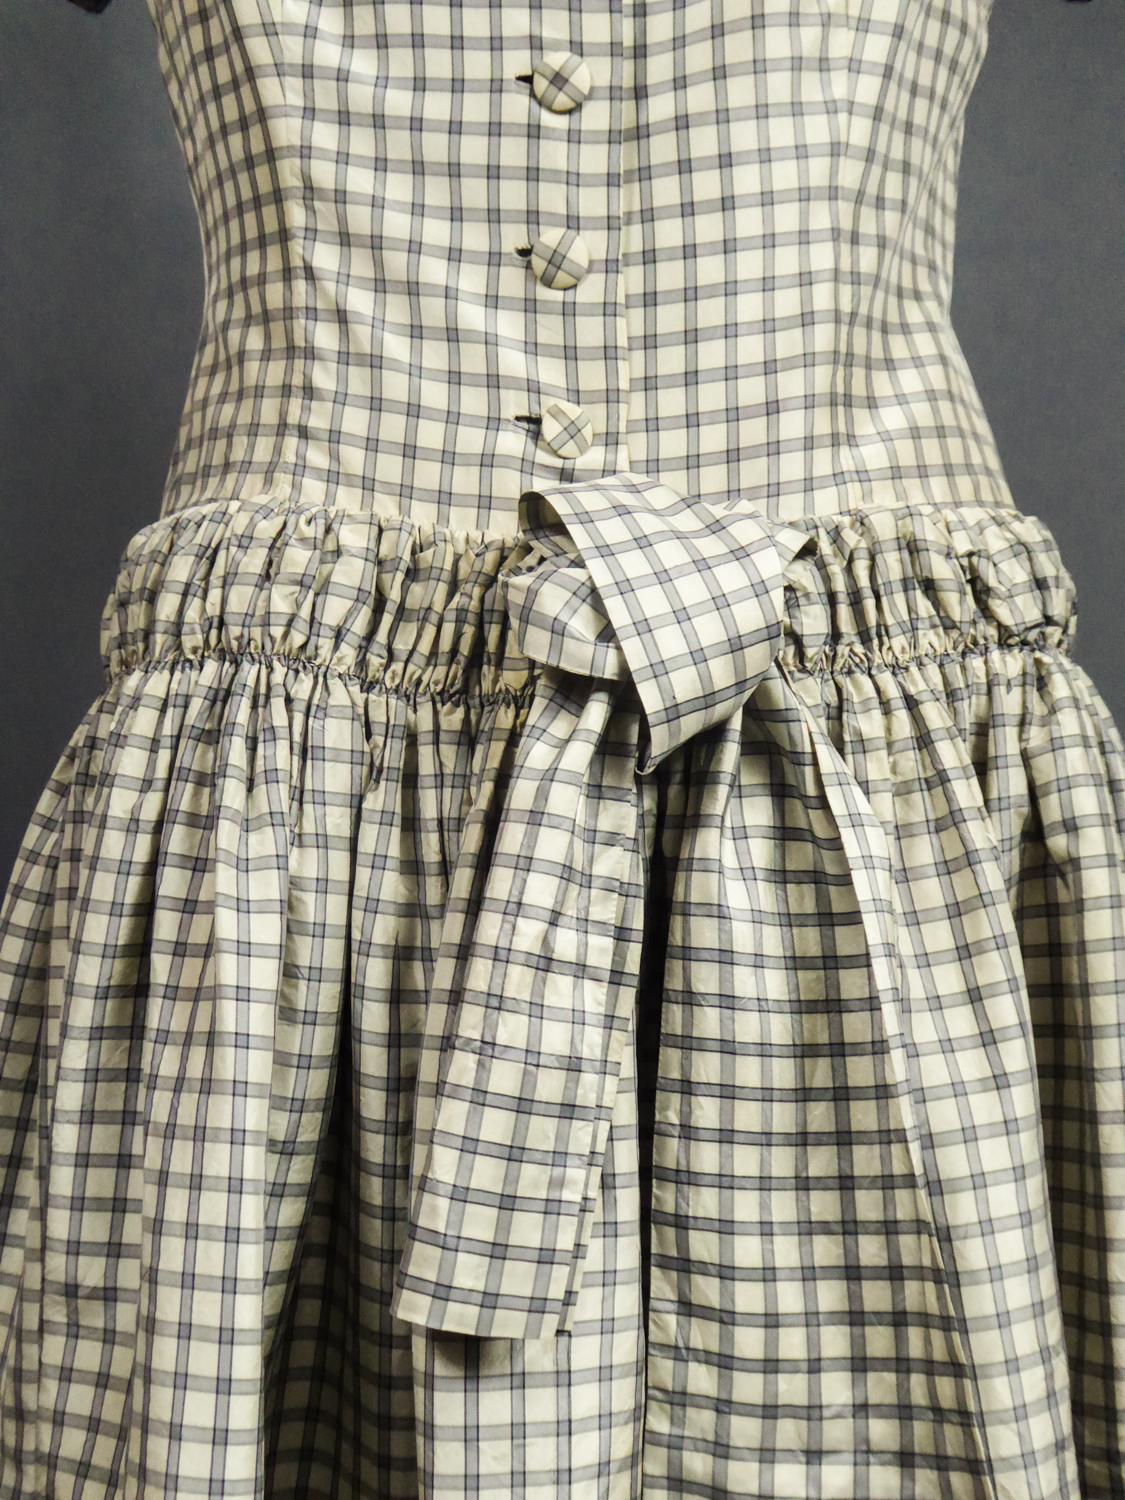 A Cristobal Balenciaga Couture Sac Dress in Plaid Taffeta n°55418 Circa 1958 6